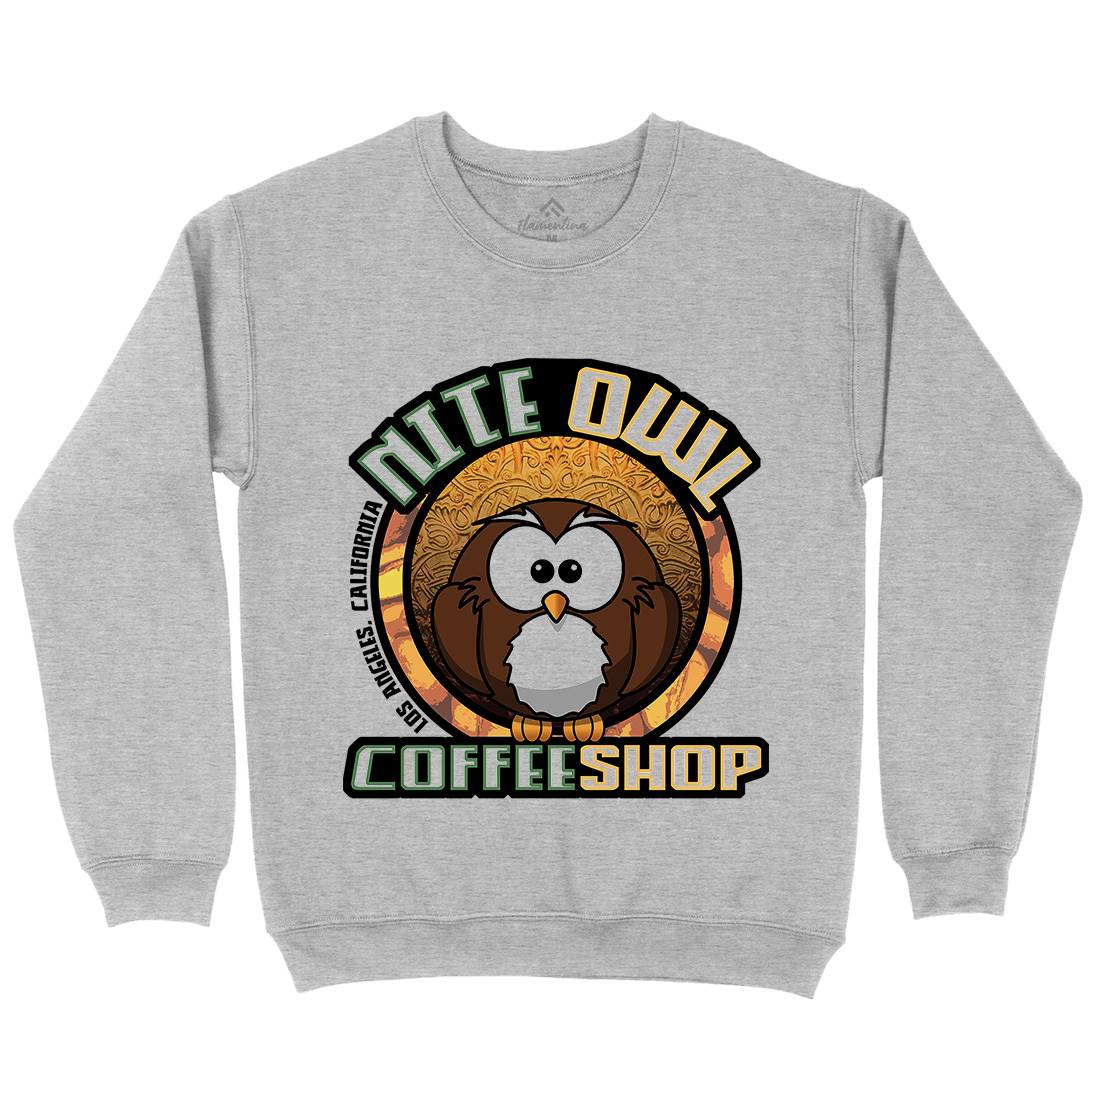 Nite Owl Kids Crew Neck Sweatshirt Drinks D416